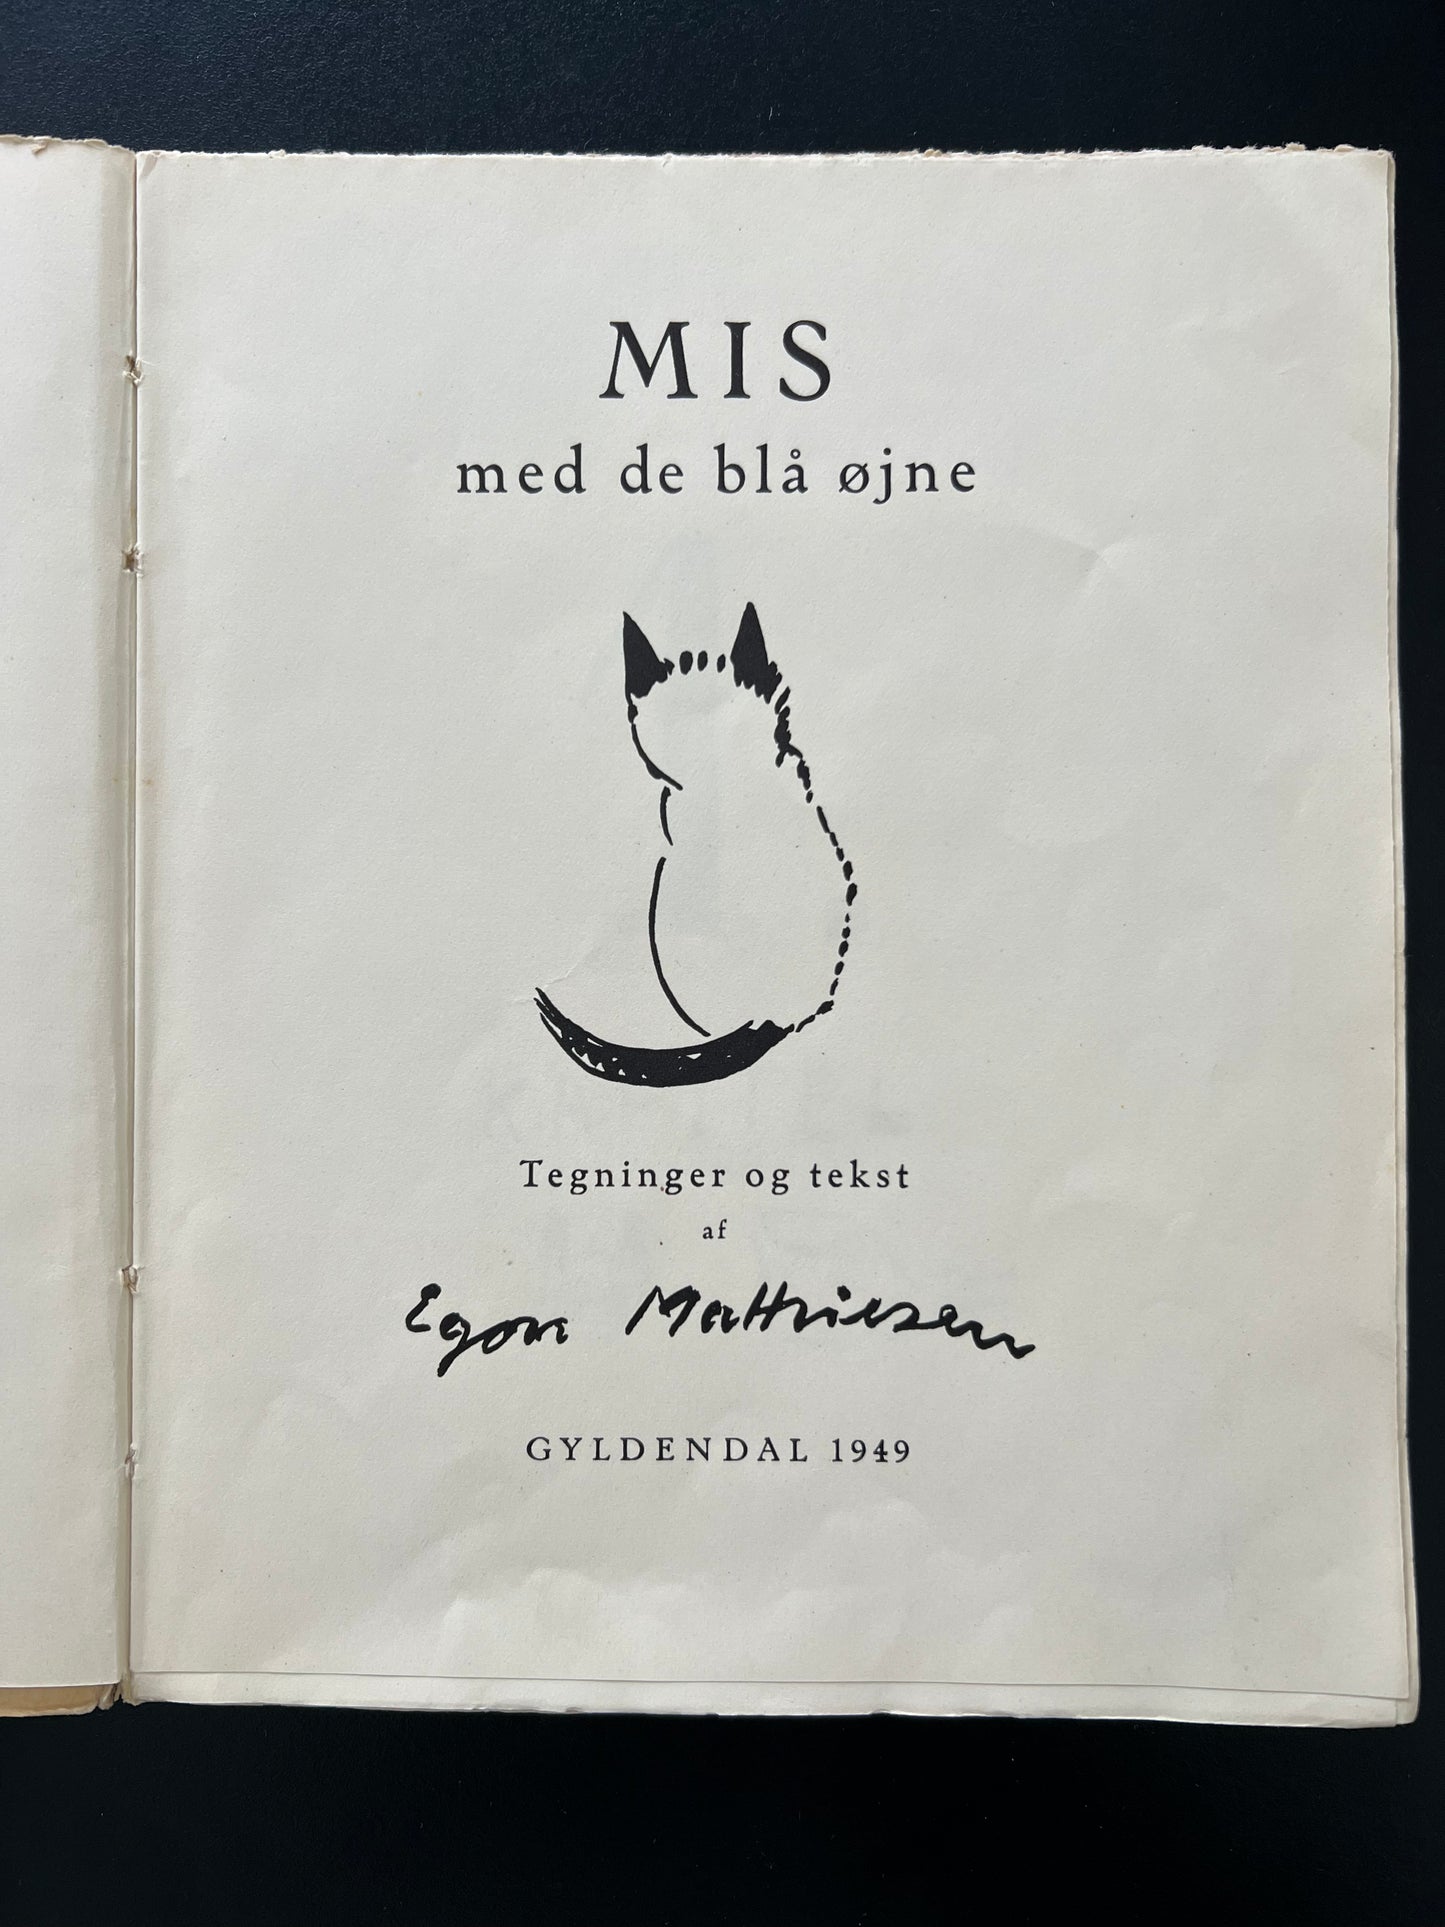 Egon Mathiesen. “Mis med de blå øjne”, 1949